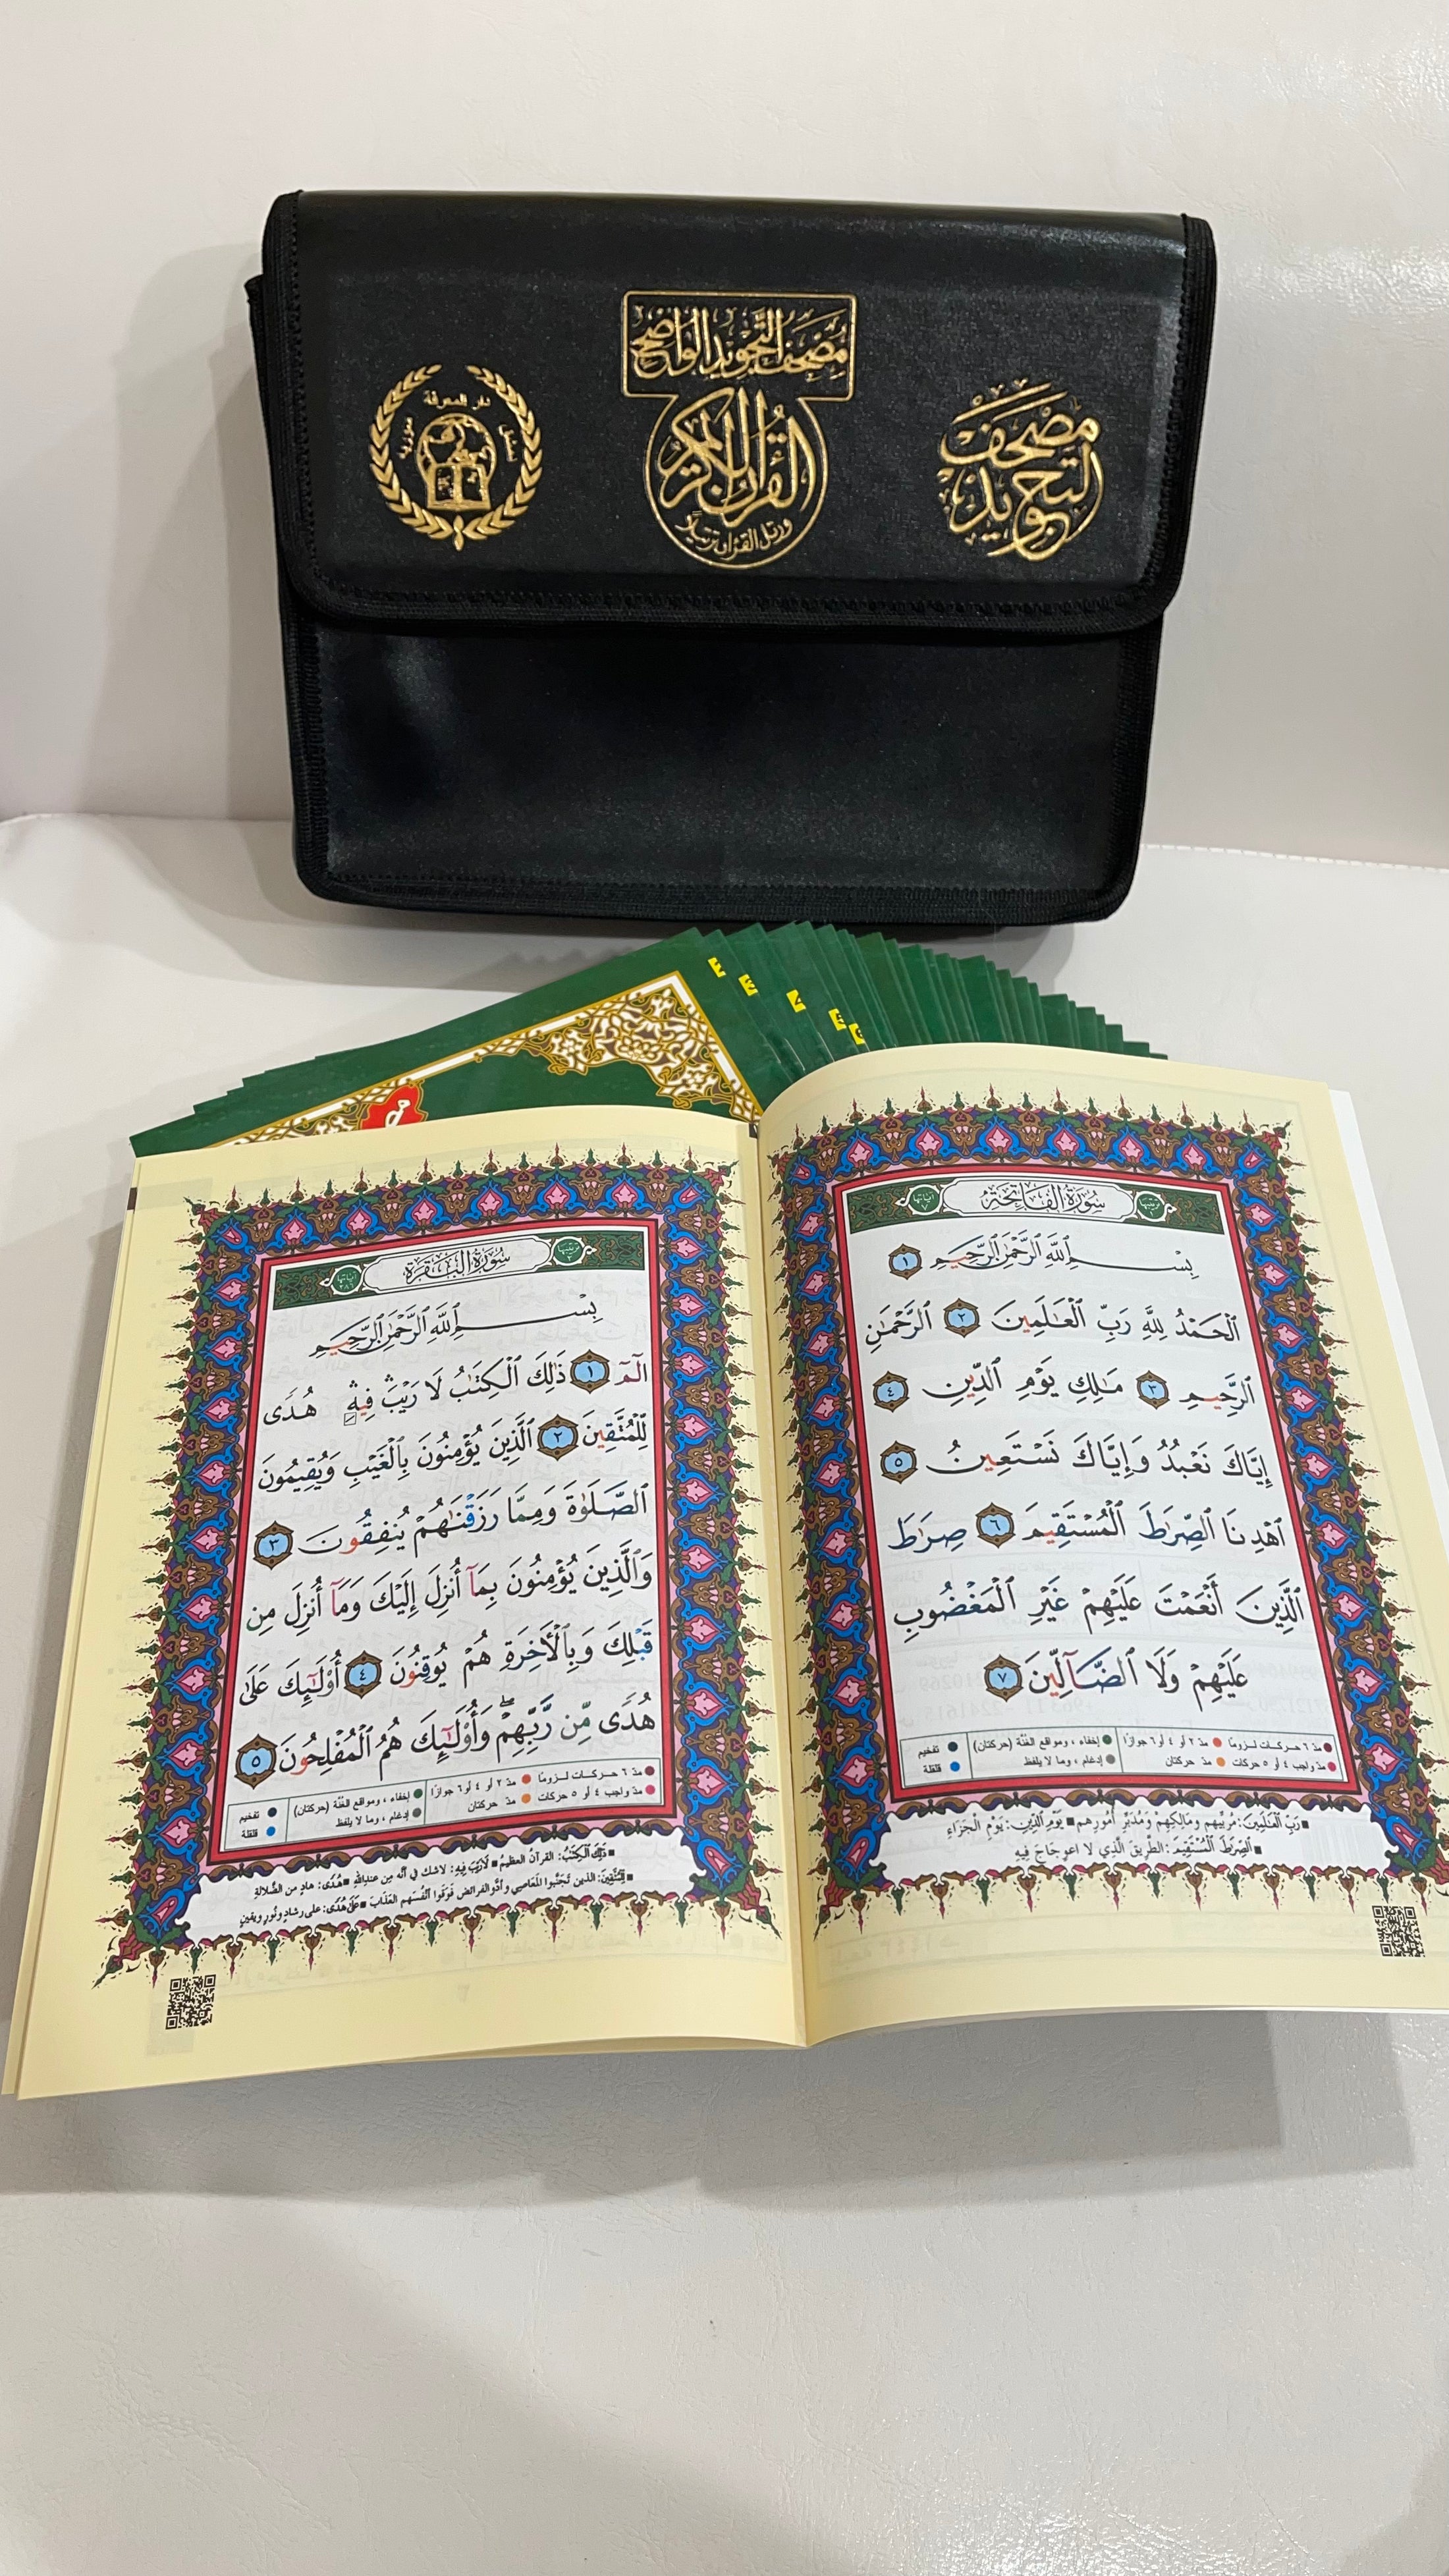 Corano tajwid khatma - hafs- Hijab Paradise - arabo - Corano è completo di tutte le 114 sure divise in 30 libricini - custodia rigida